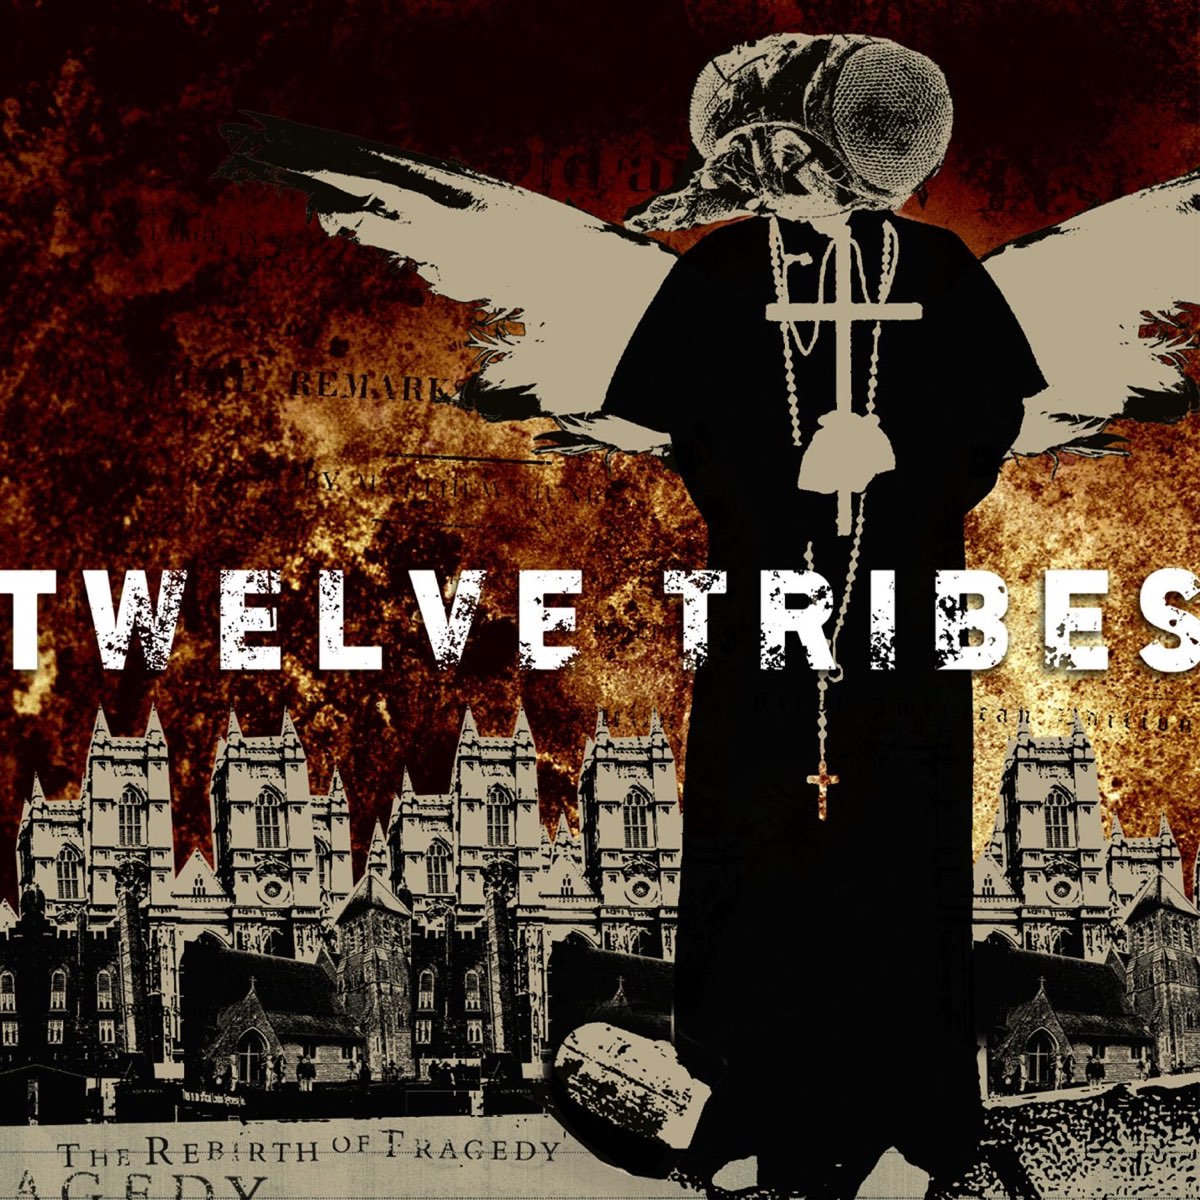 Tribe Twelve националист. Tribe Twelve головорез. Twelfth Tribe. Tribe twelve